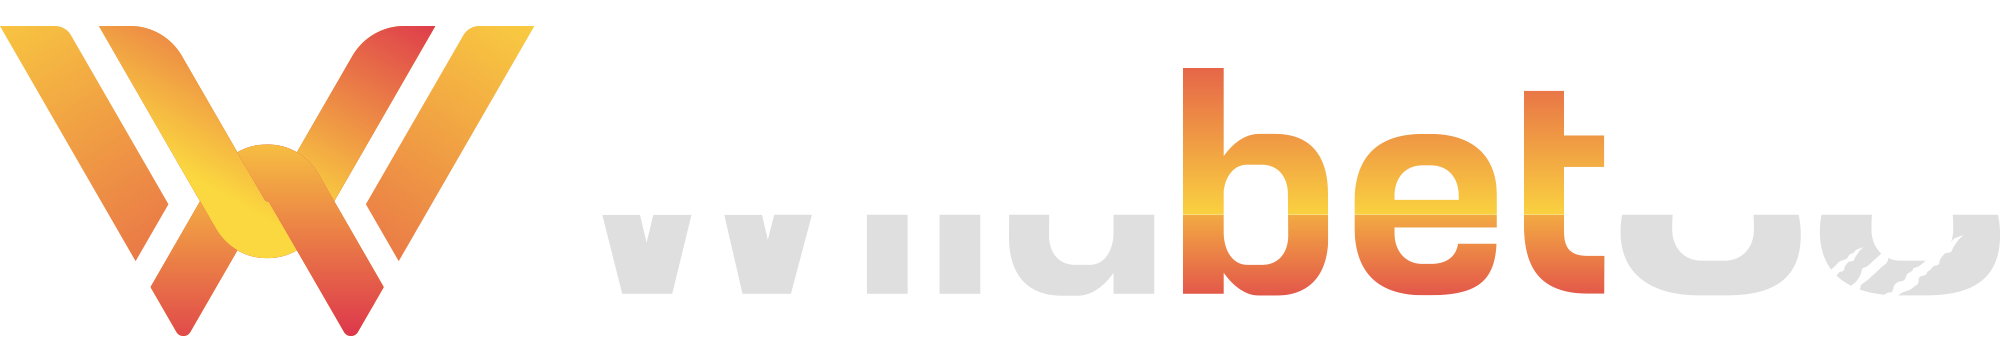 wild88th logo